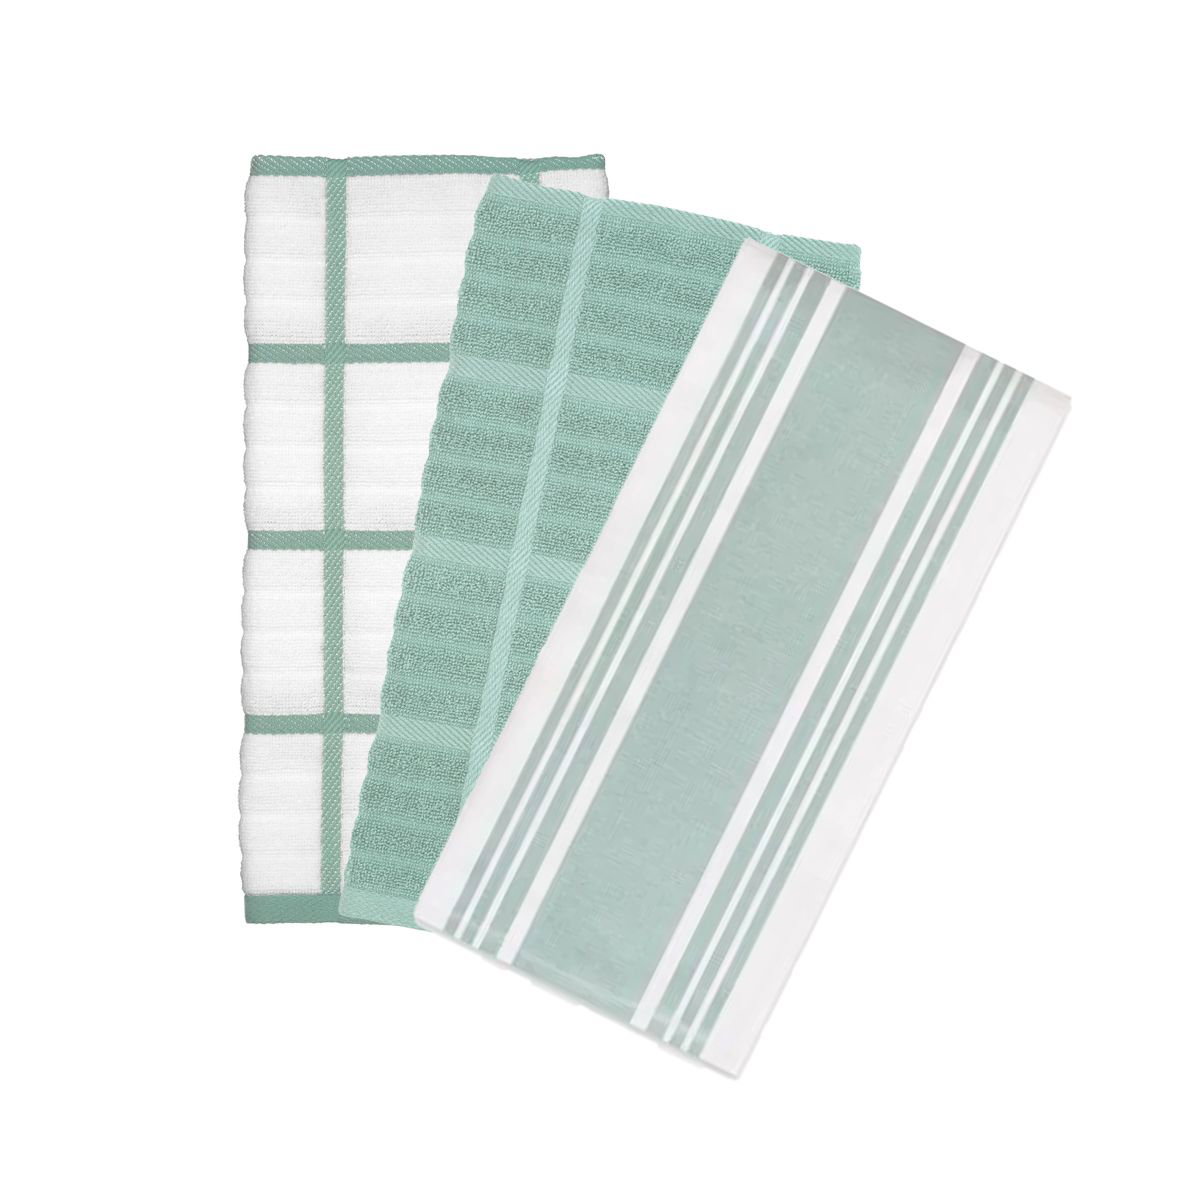 New Set of 2 Ultra All-Clad Kitchen Dish Towels Aqua Sky (Color = Rainfall)  